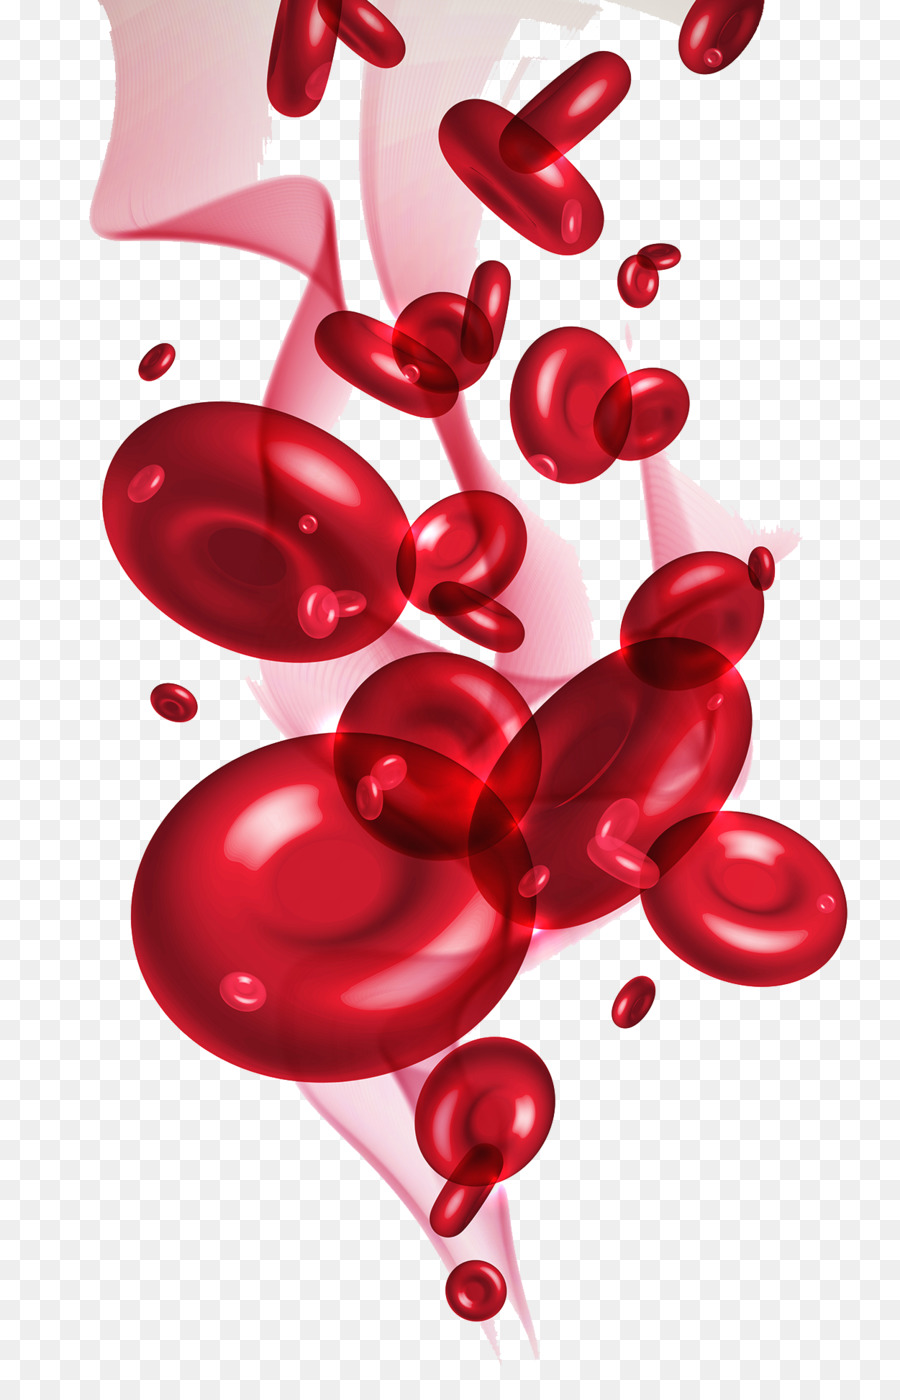 tế bào máu đỏ - tế bào